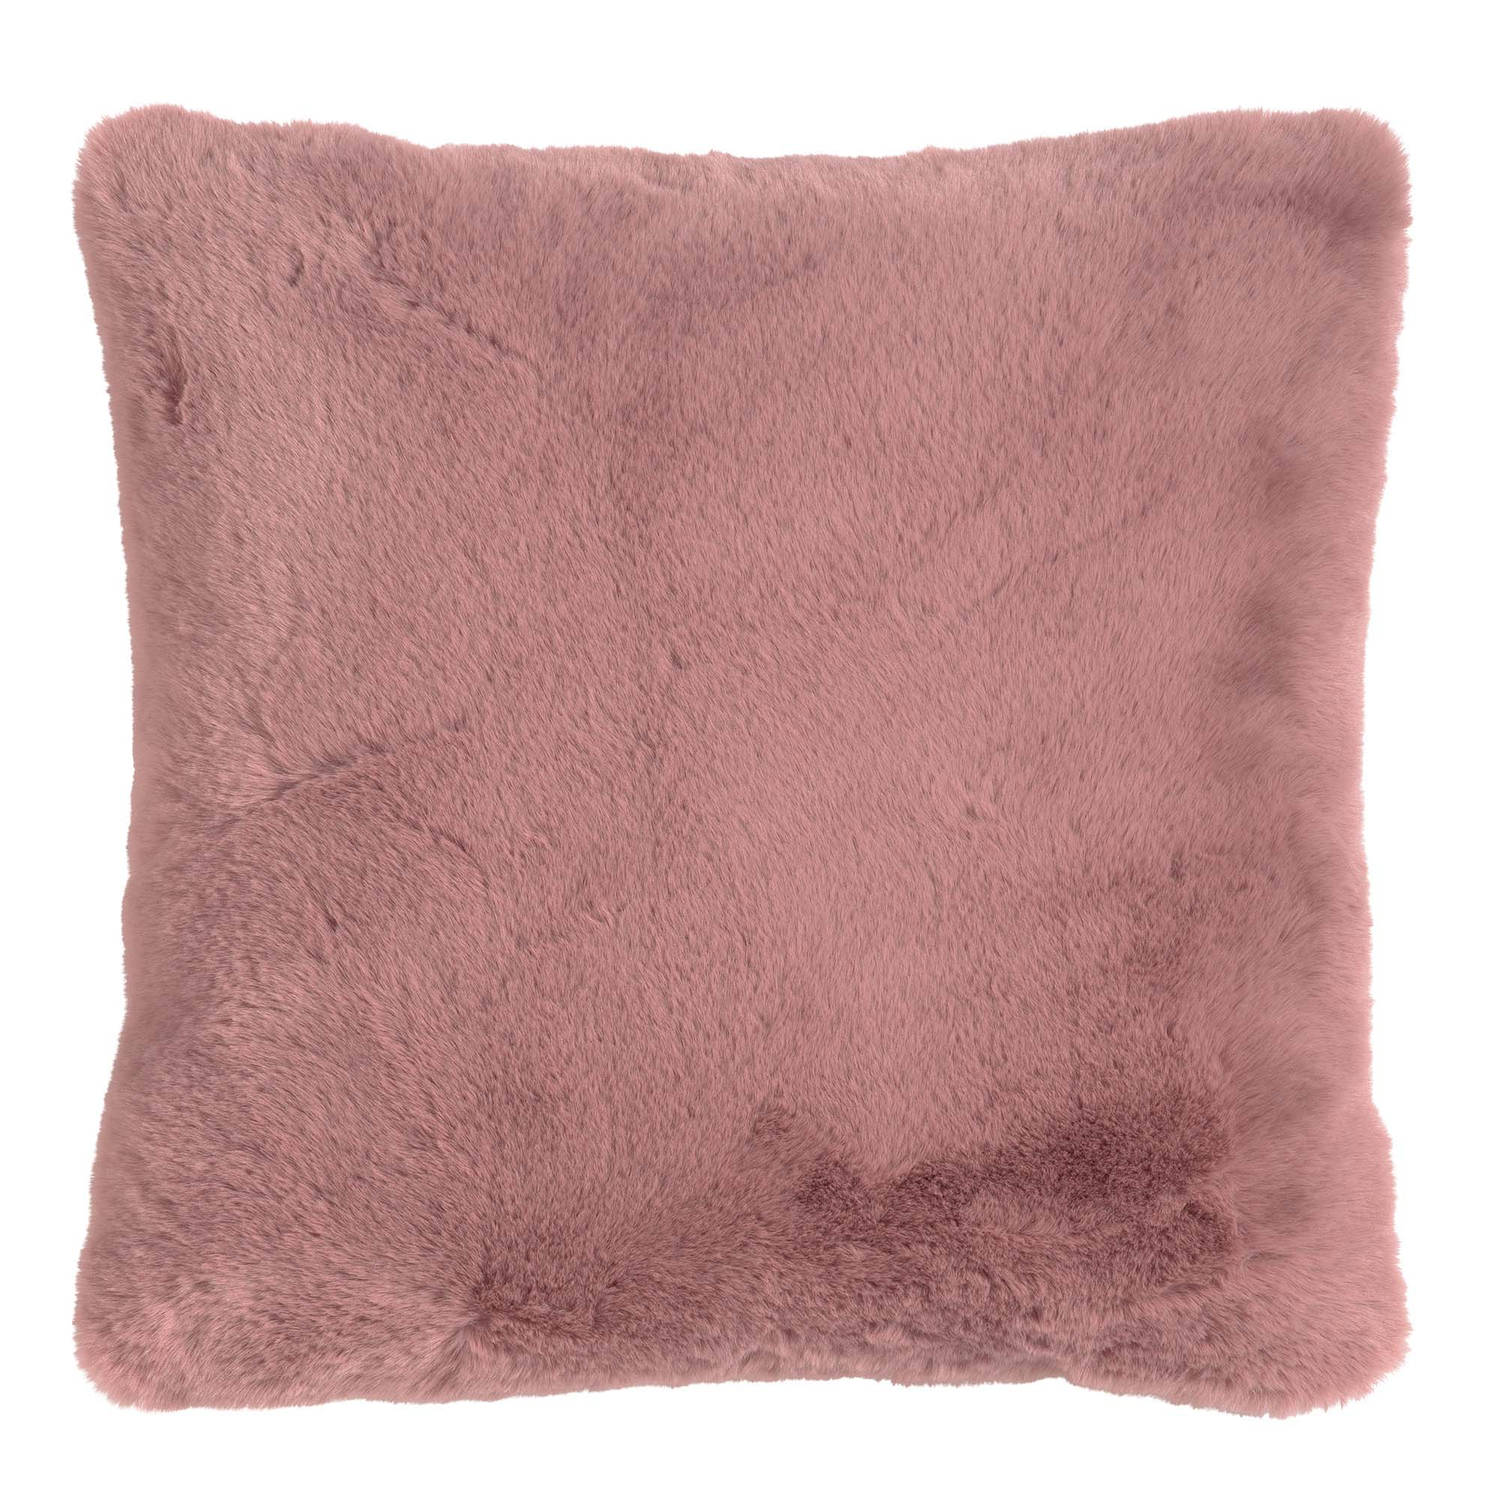 ZAYA - Kussenhoes unikleur 45x45 cm - Pale Mauve - roze - superzacht - met rits